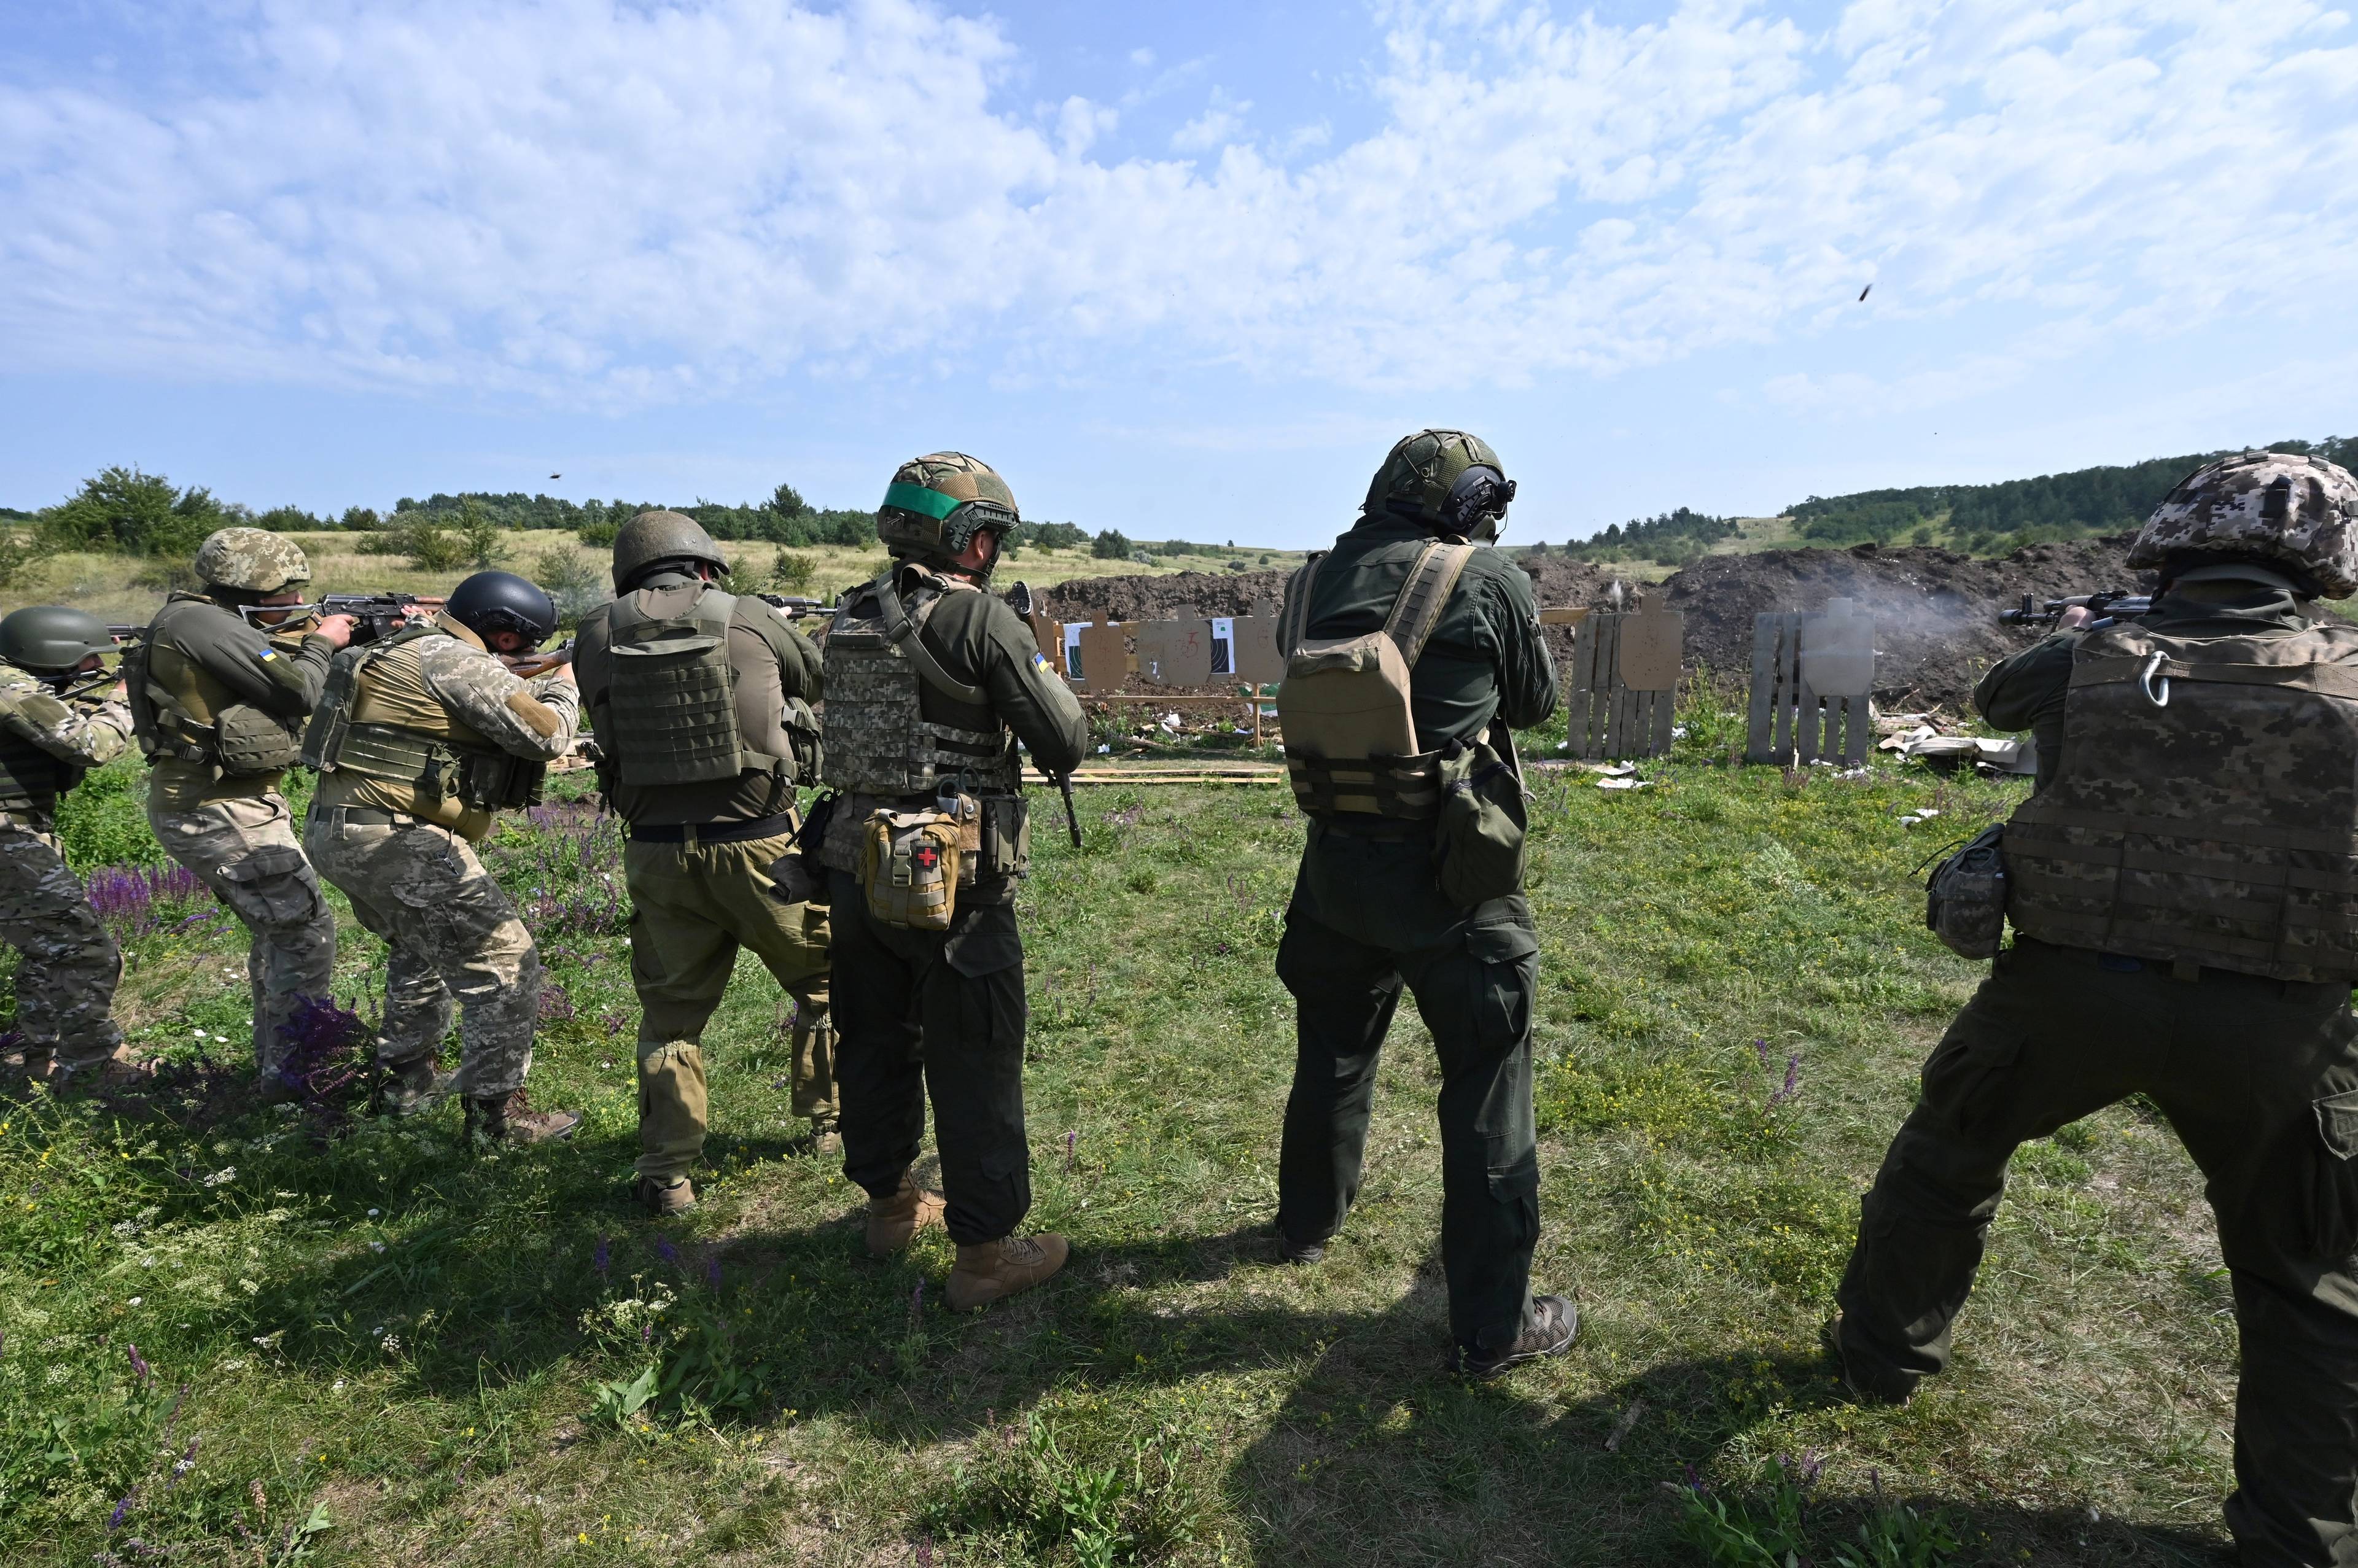 żołnierze w ekwipunku bojowym ćwiczą na strzelnicy